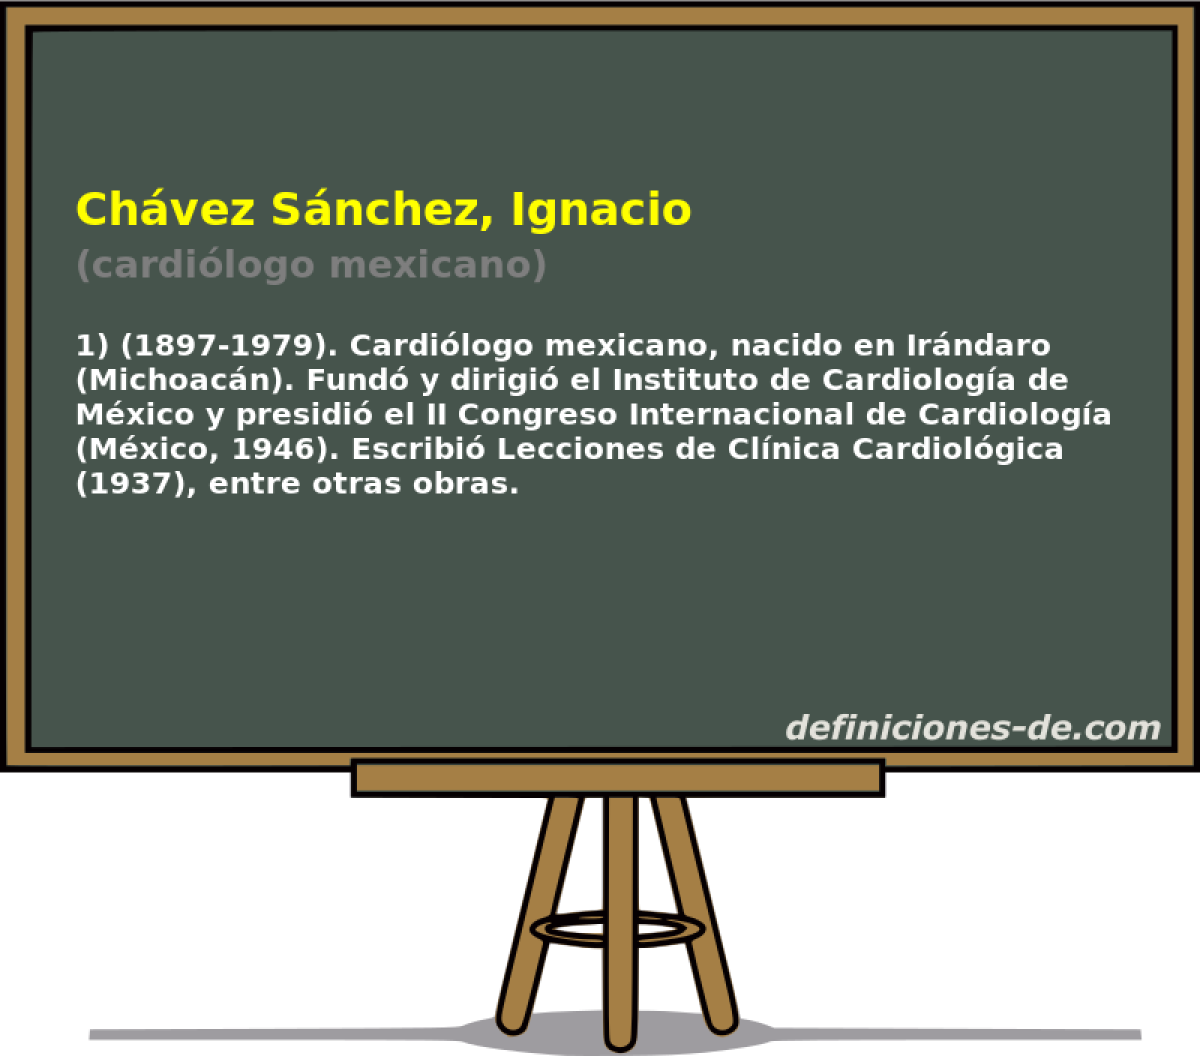 Chvez Snchez, Ignacio (cardilogo mexicano)